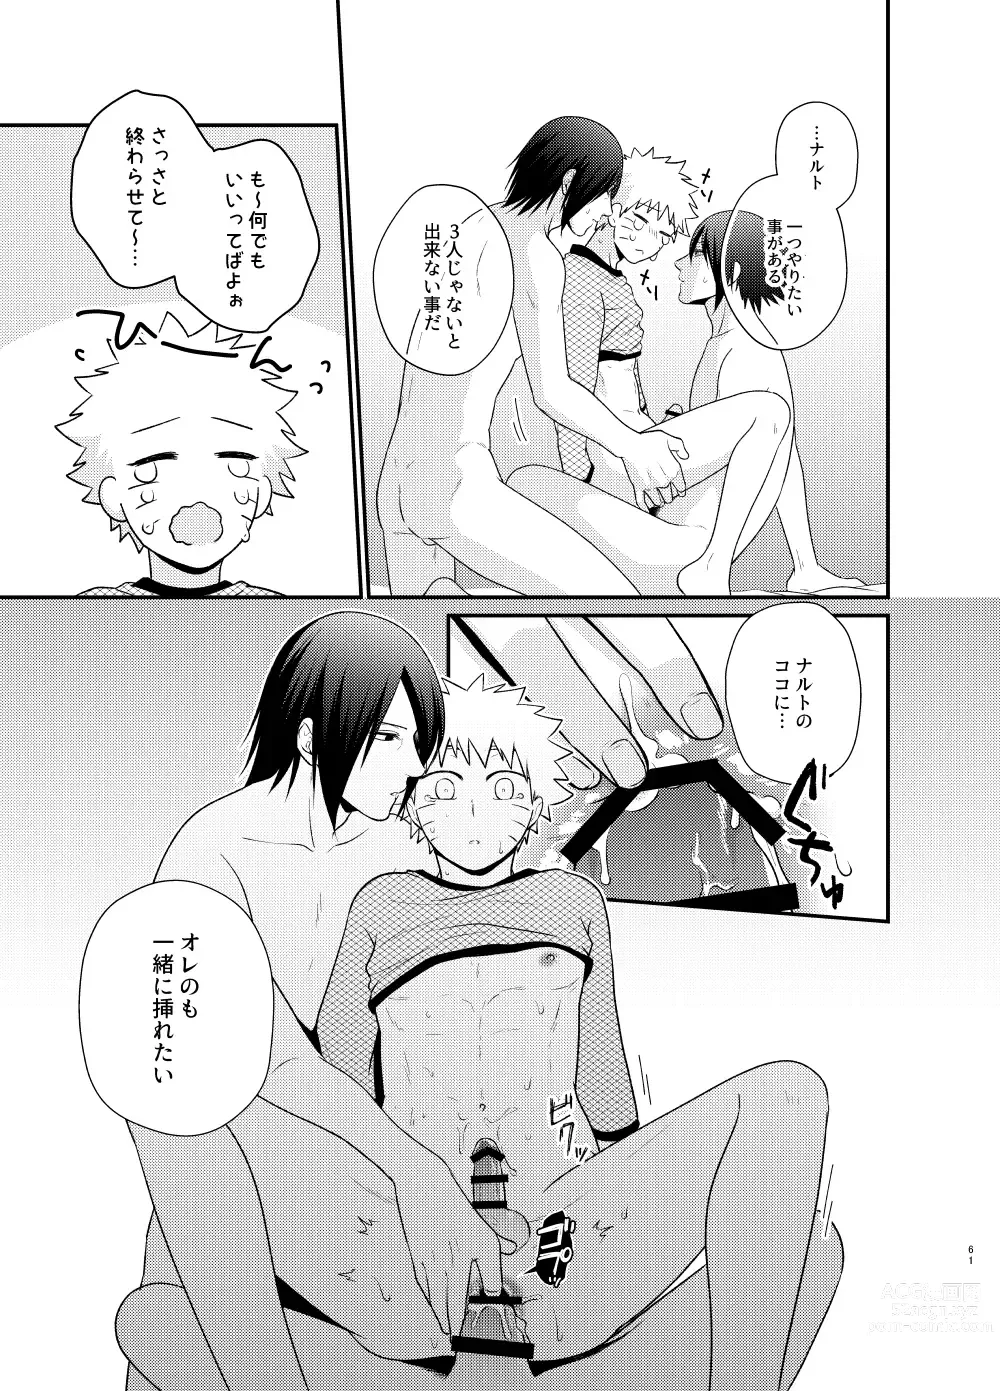 Page 58 of doujinshi Gochamaze 37 ~Rei no Heya ni Tojikomete Okimashita~